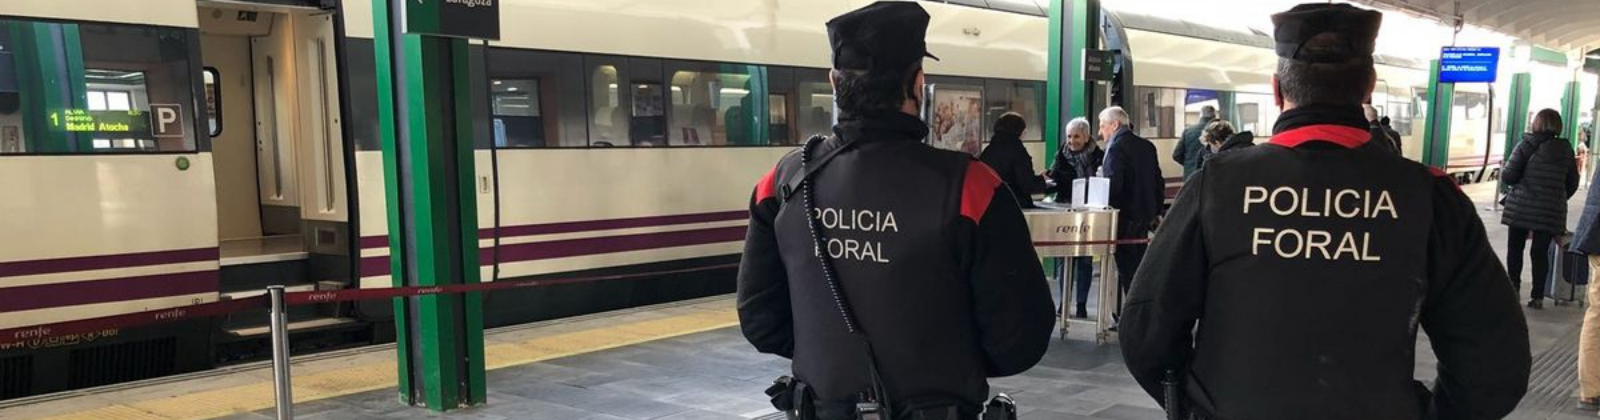 Oposiciones Policía Foral de Navarra